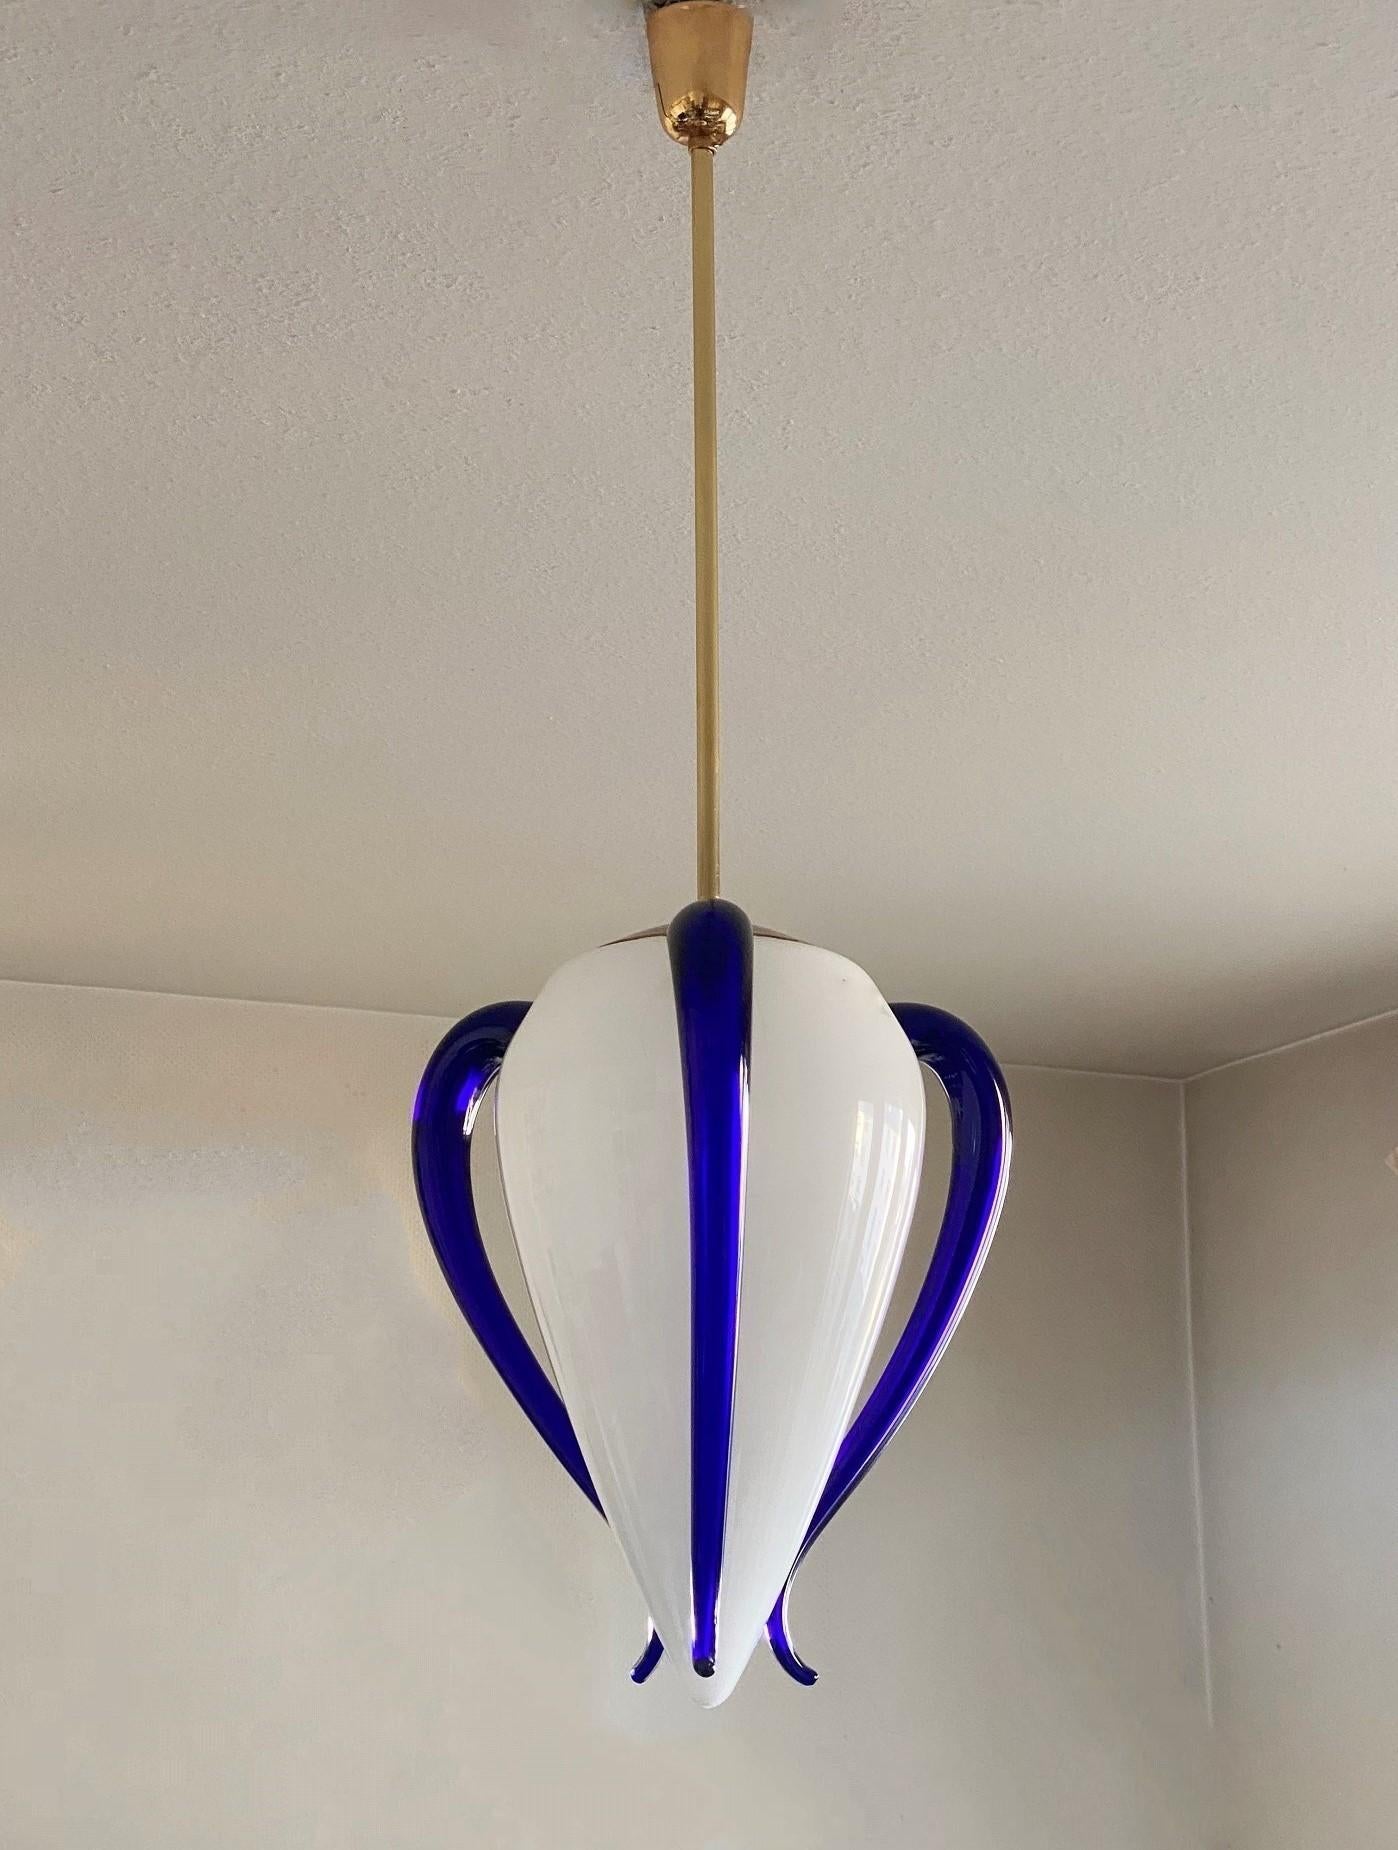 Rare pendentif en verre de Murano soufflé à la main par le célèbre fabricant de verre Barovier&Toso, Italie, 1991. Les trois éléments latéraux bleu roi réglables confèrent au pendentif un design très élégant et unique. Référence du livre : 007,